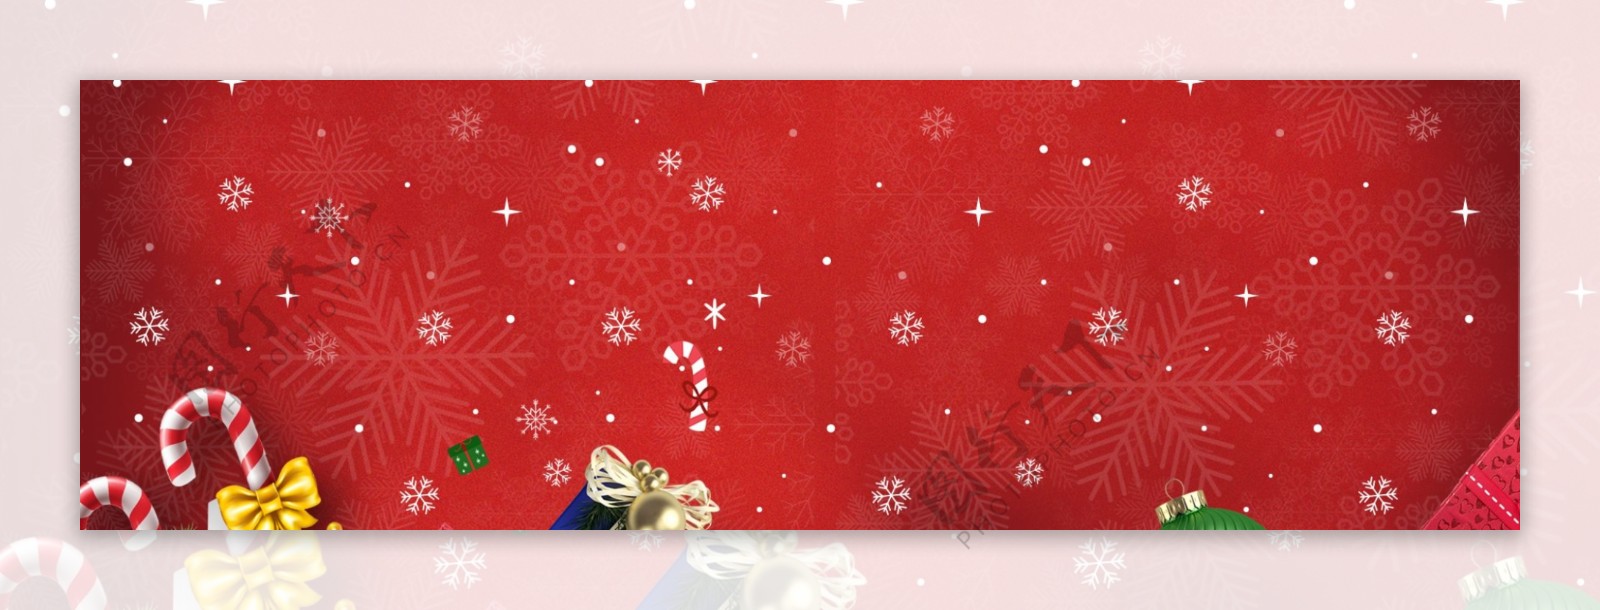 雪花雪地圣诞节促销卡通banner背景